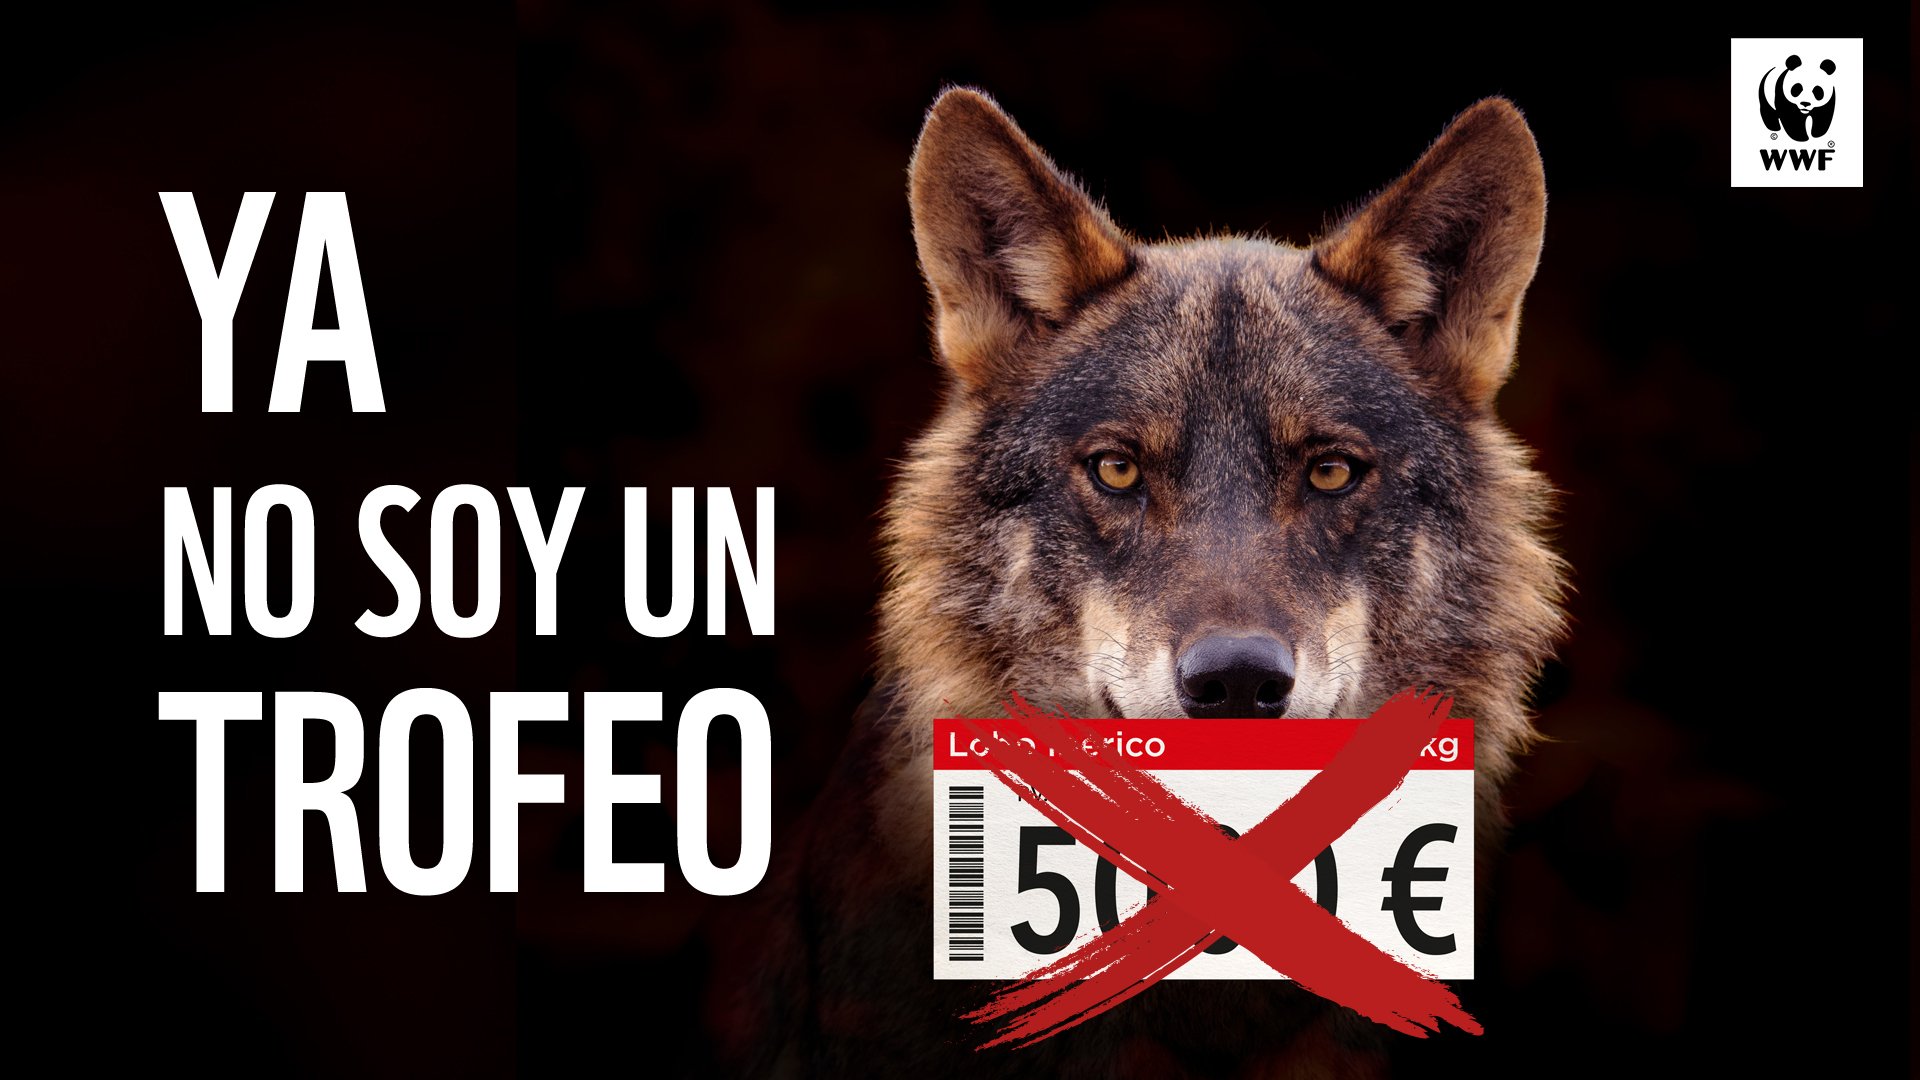 Ja és oficial: el llop no es podrà caçar mai més